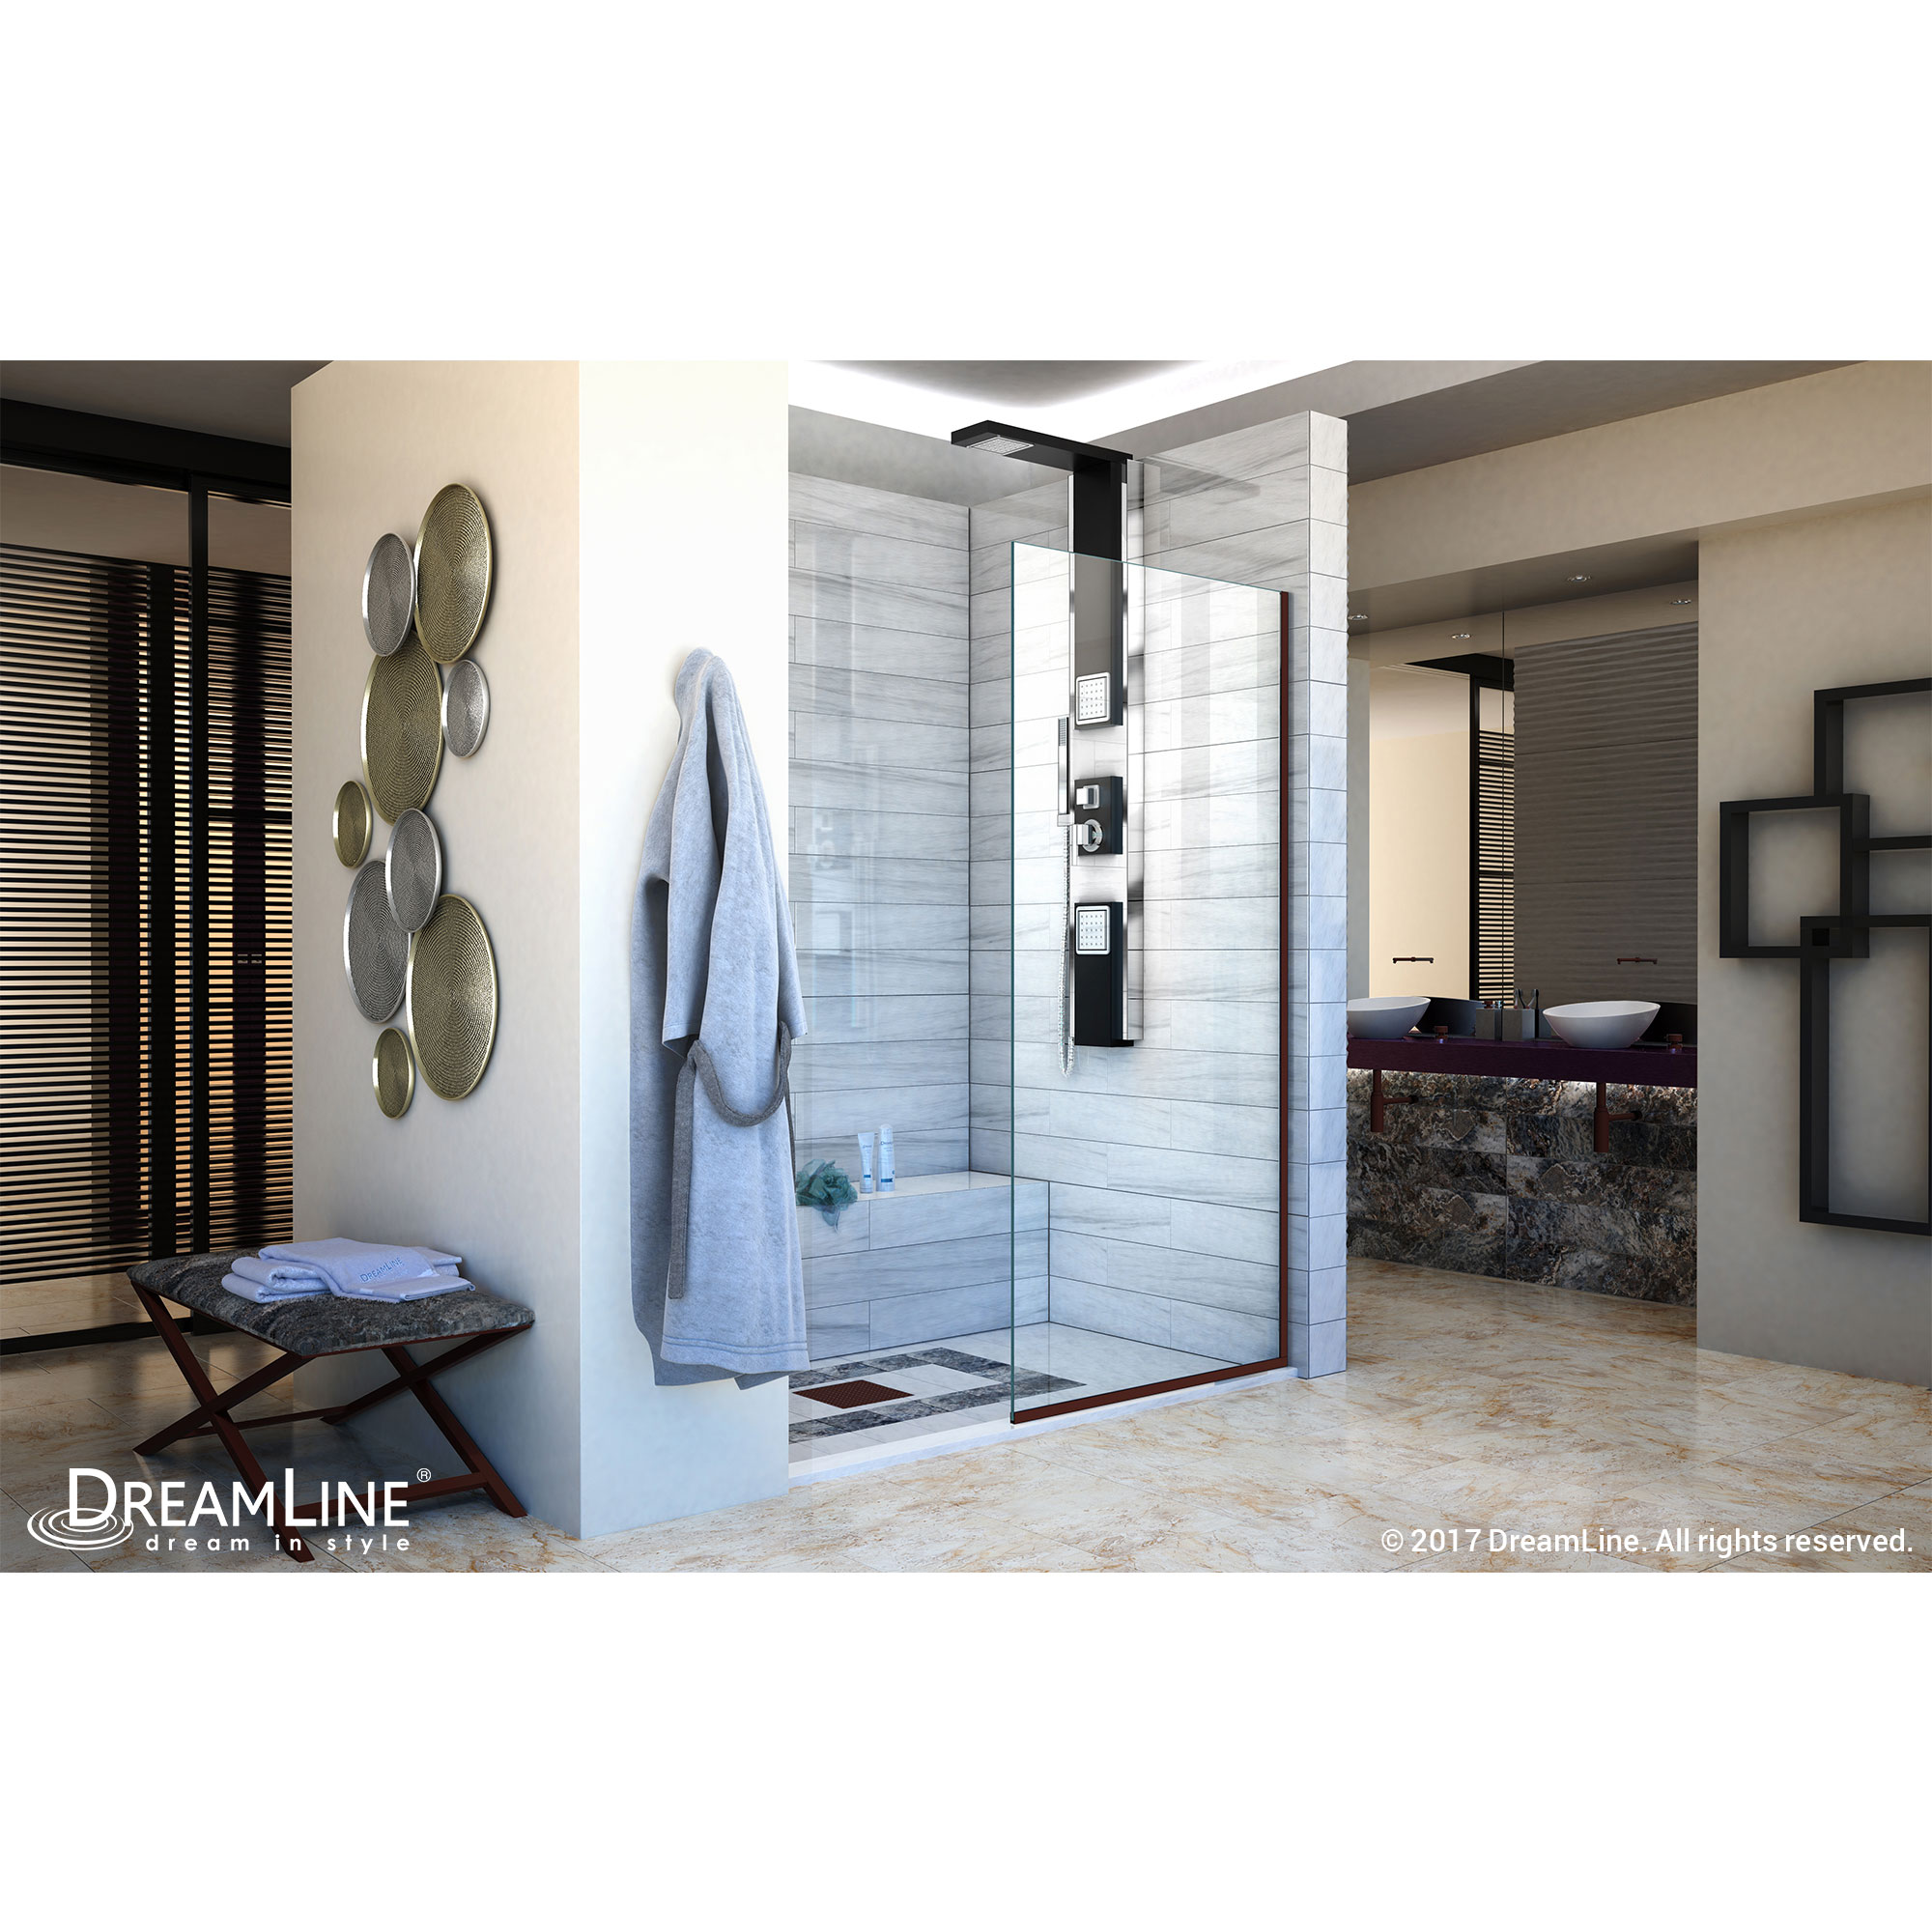 DreamLine Linea Single Panel Frameless Shower Screen 34 in. W x 72 in. H, Open Entry Design in Oil Rubbed Bronze